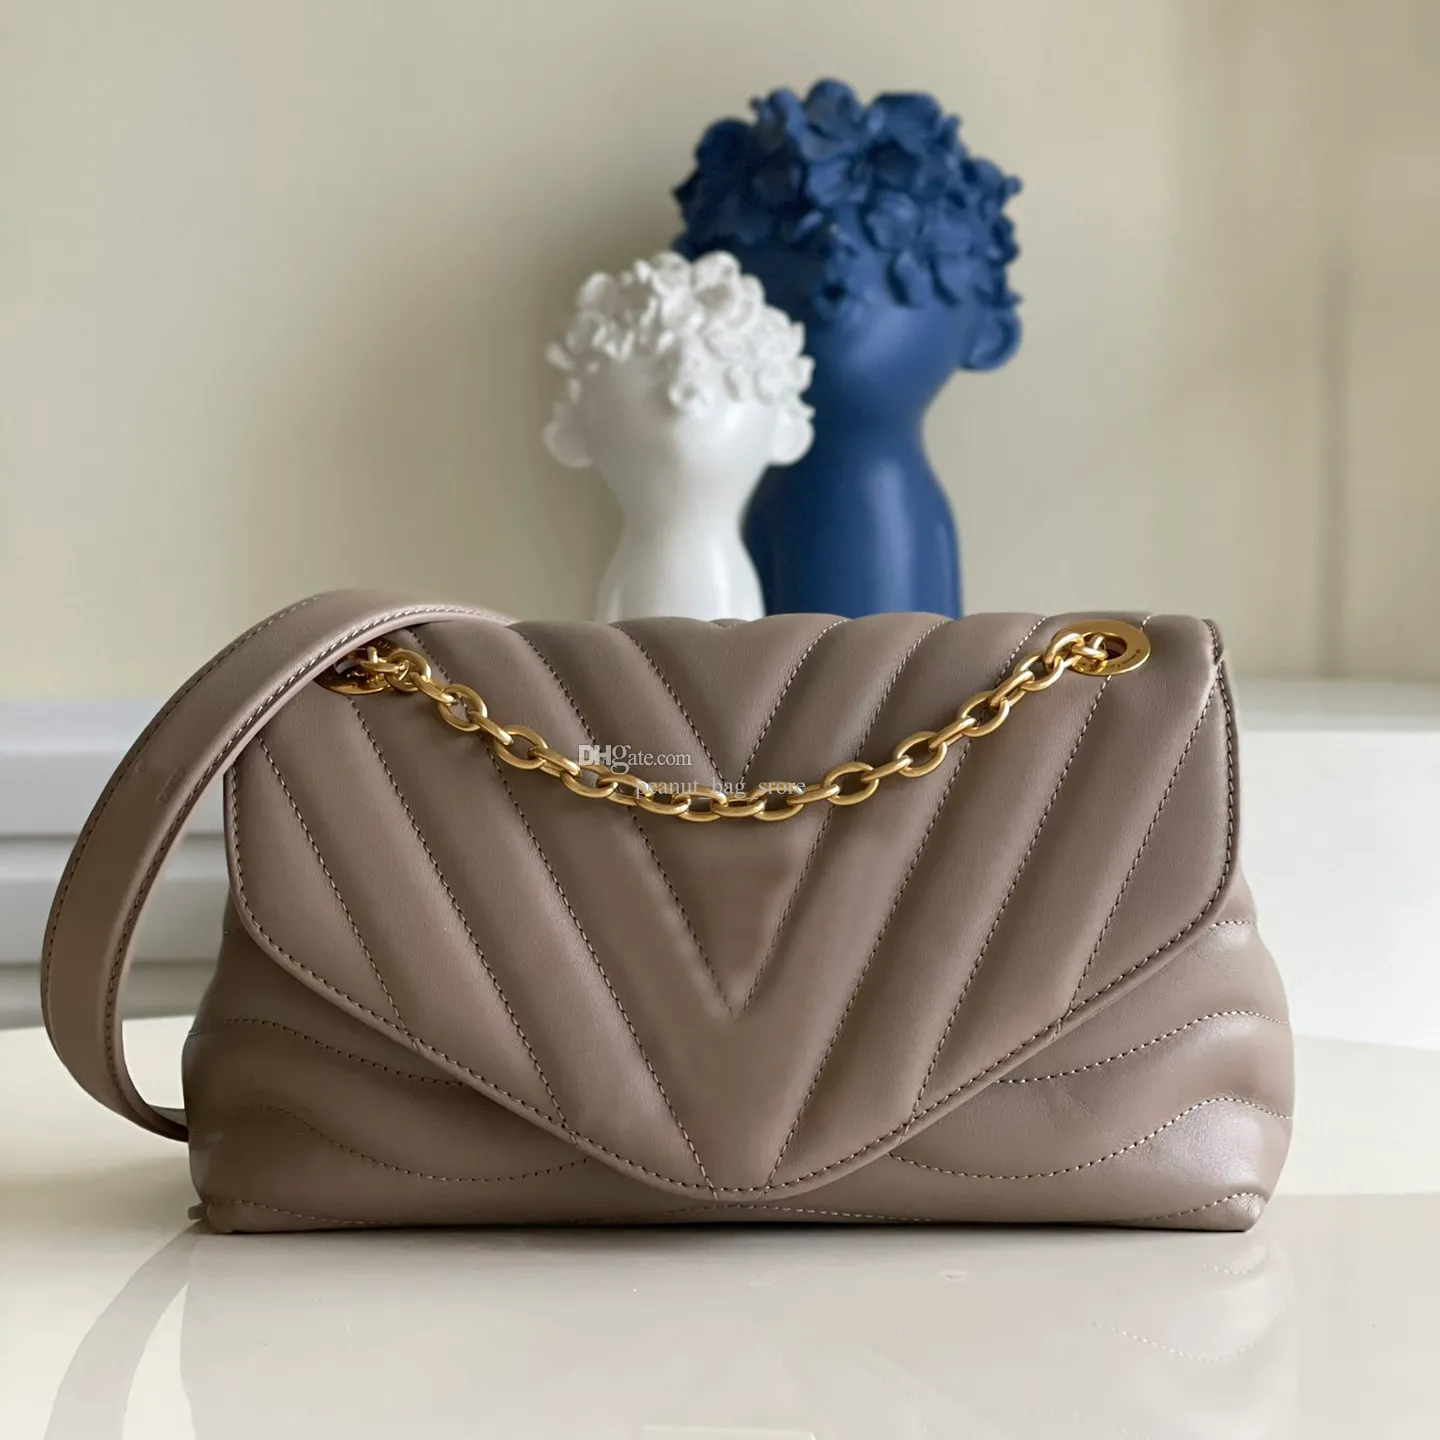 9A Designer Bag NEW WAVE Chain Stitched Handbag - Vintage Gold-Toned Hardware Women's Shoulder Bag